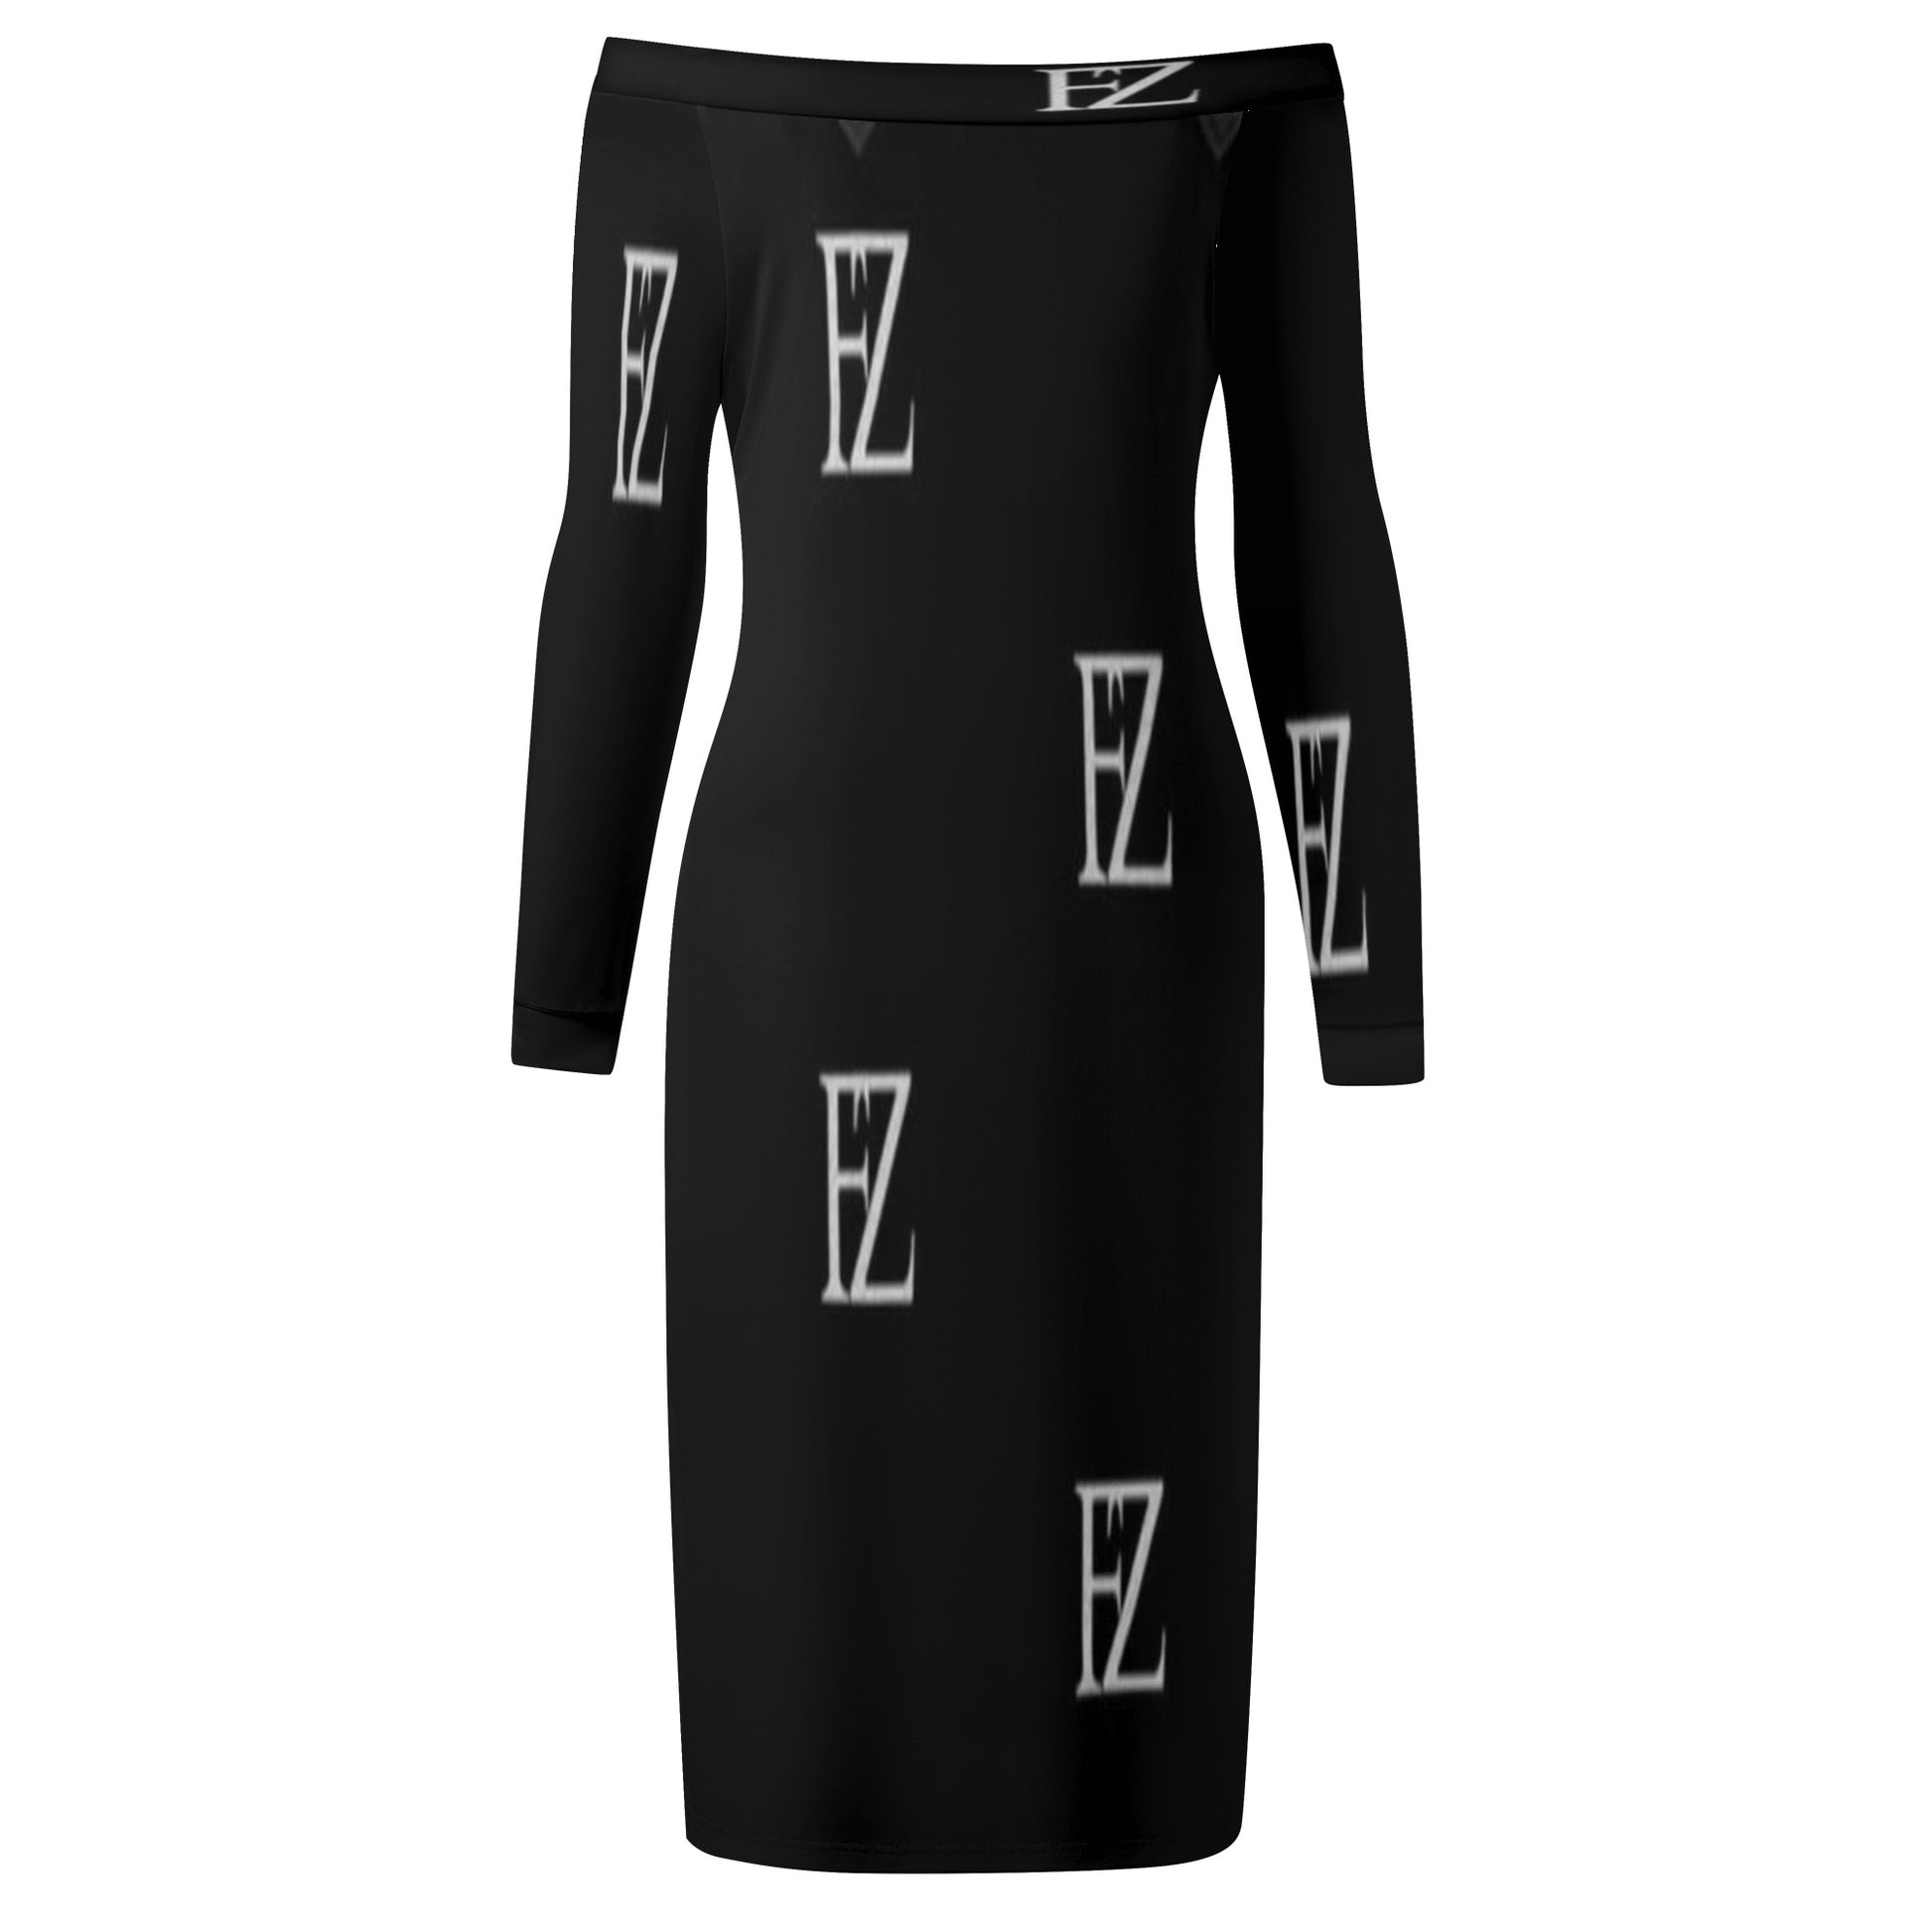 FZ Women's Long Sleeve Off The Shoulder Dress - FZwear